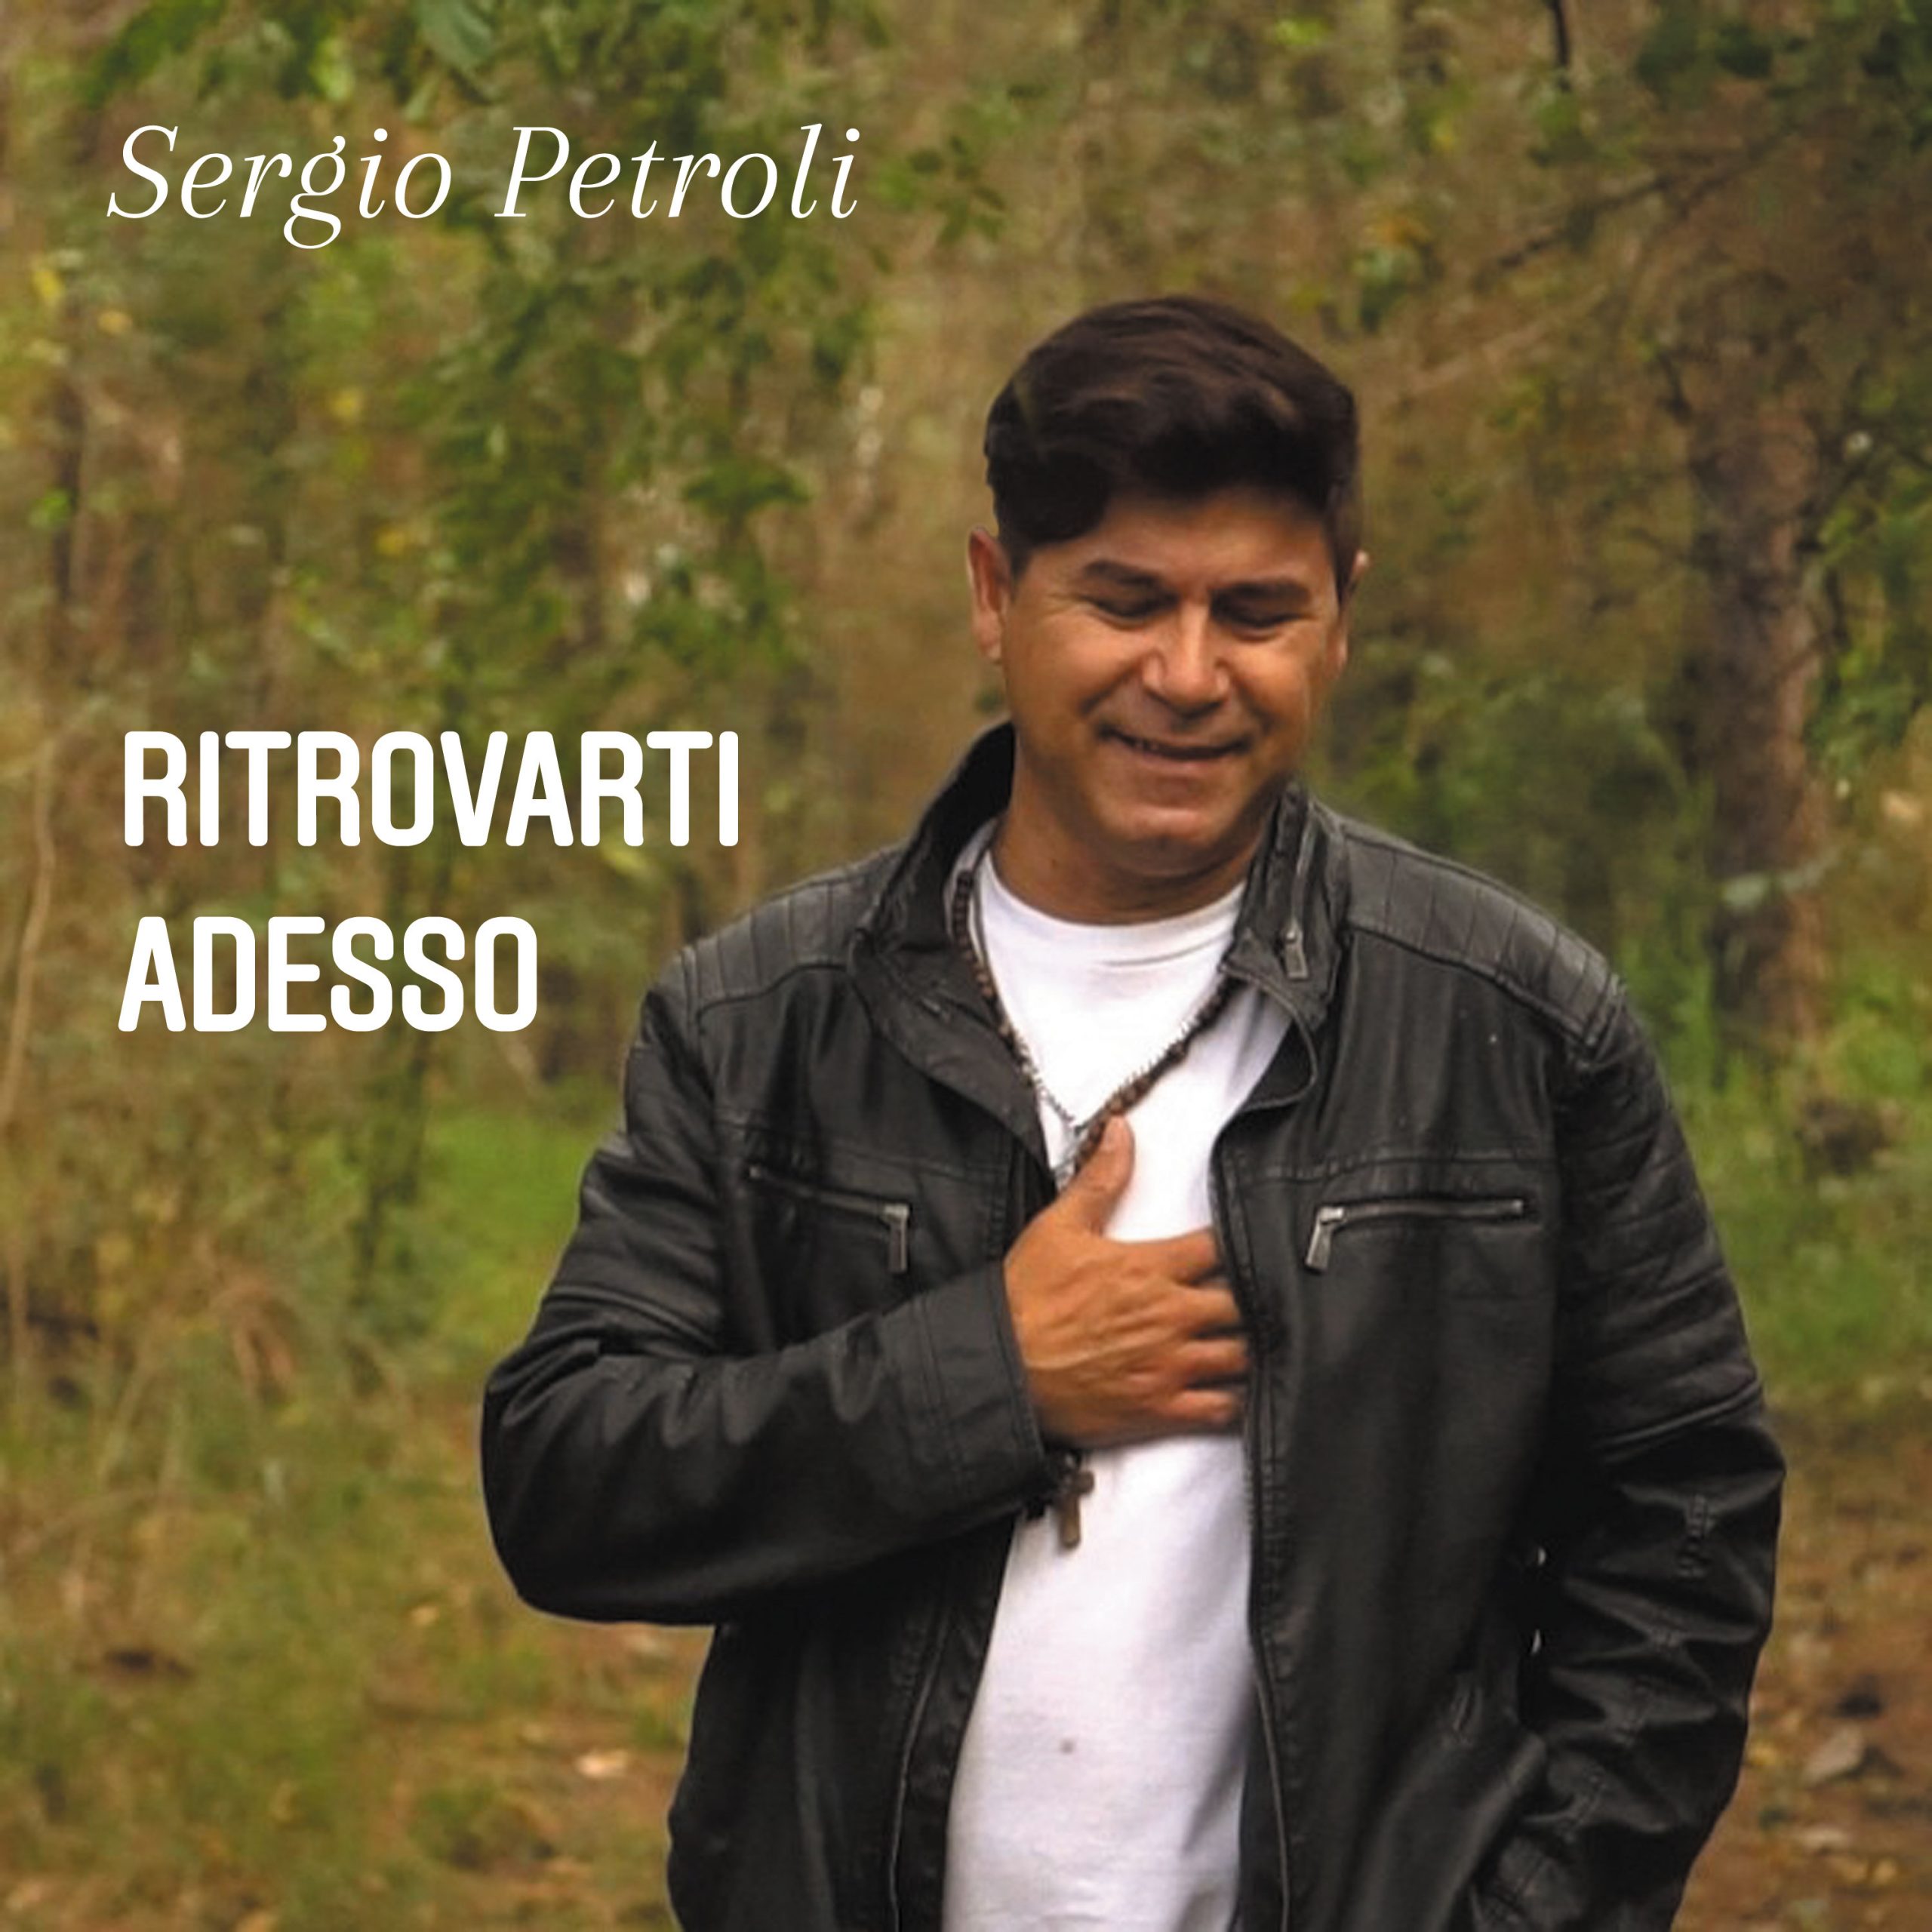 Nuovo brano in italiano per il noto cantante argentino Sergio Petroli